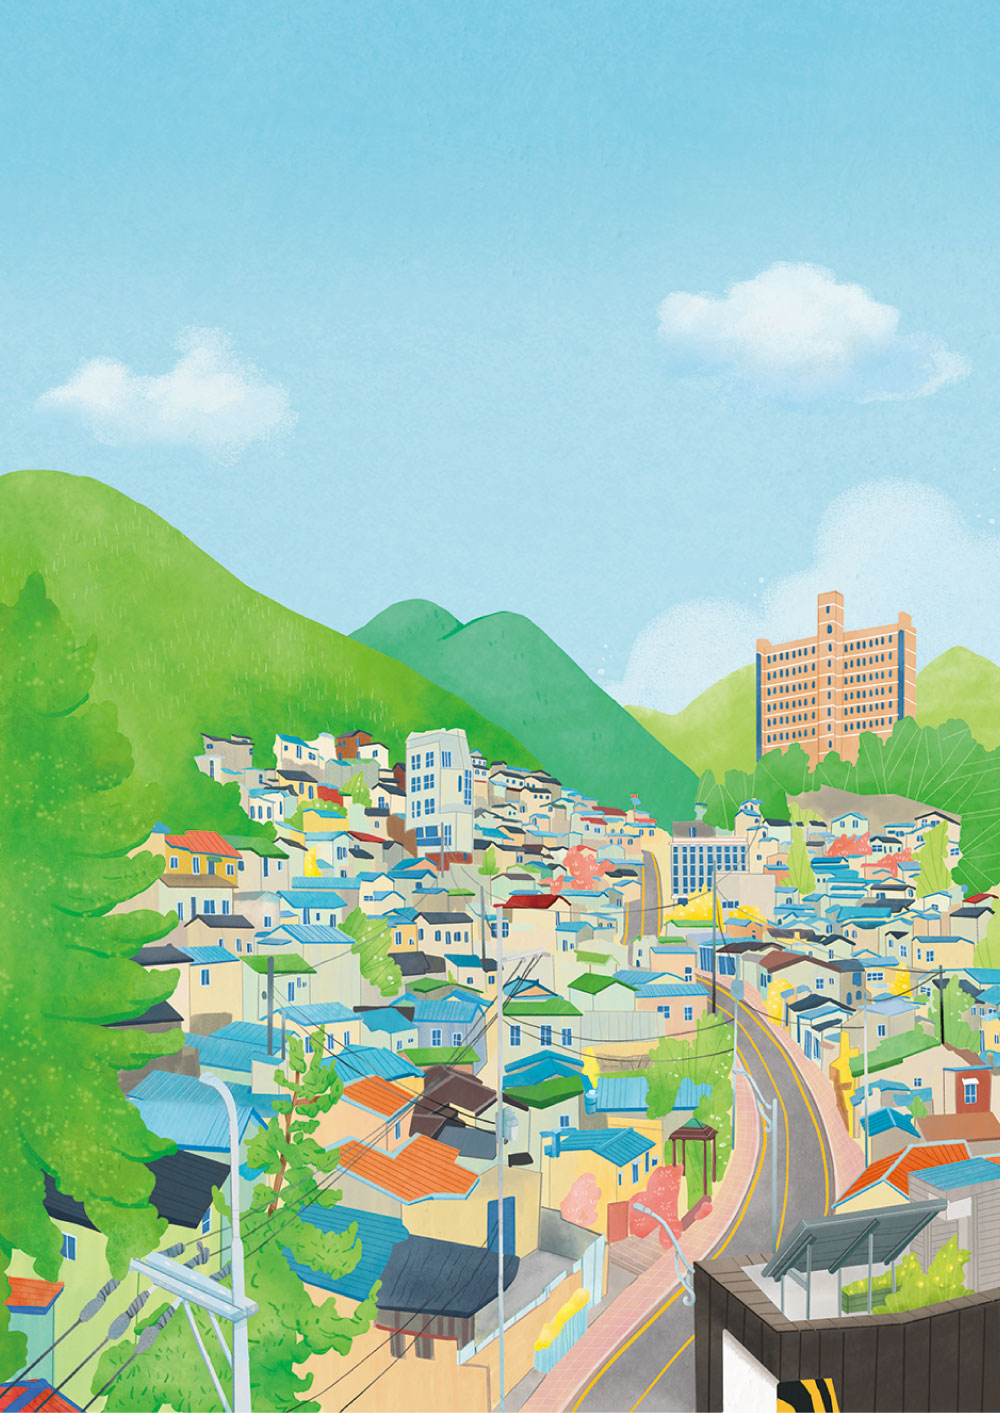 대성프린텍 표지디자인 부산 마을 일러스트 삽화 일러스트디자인 하늘눈 하늘눈디자인